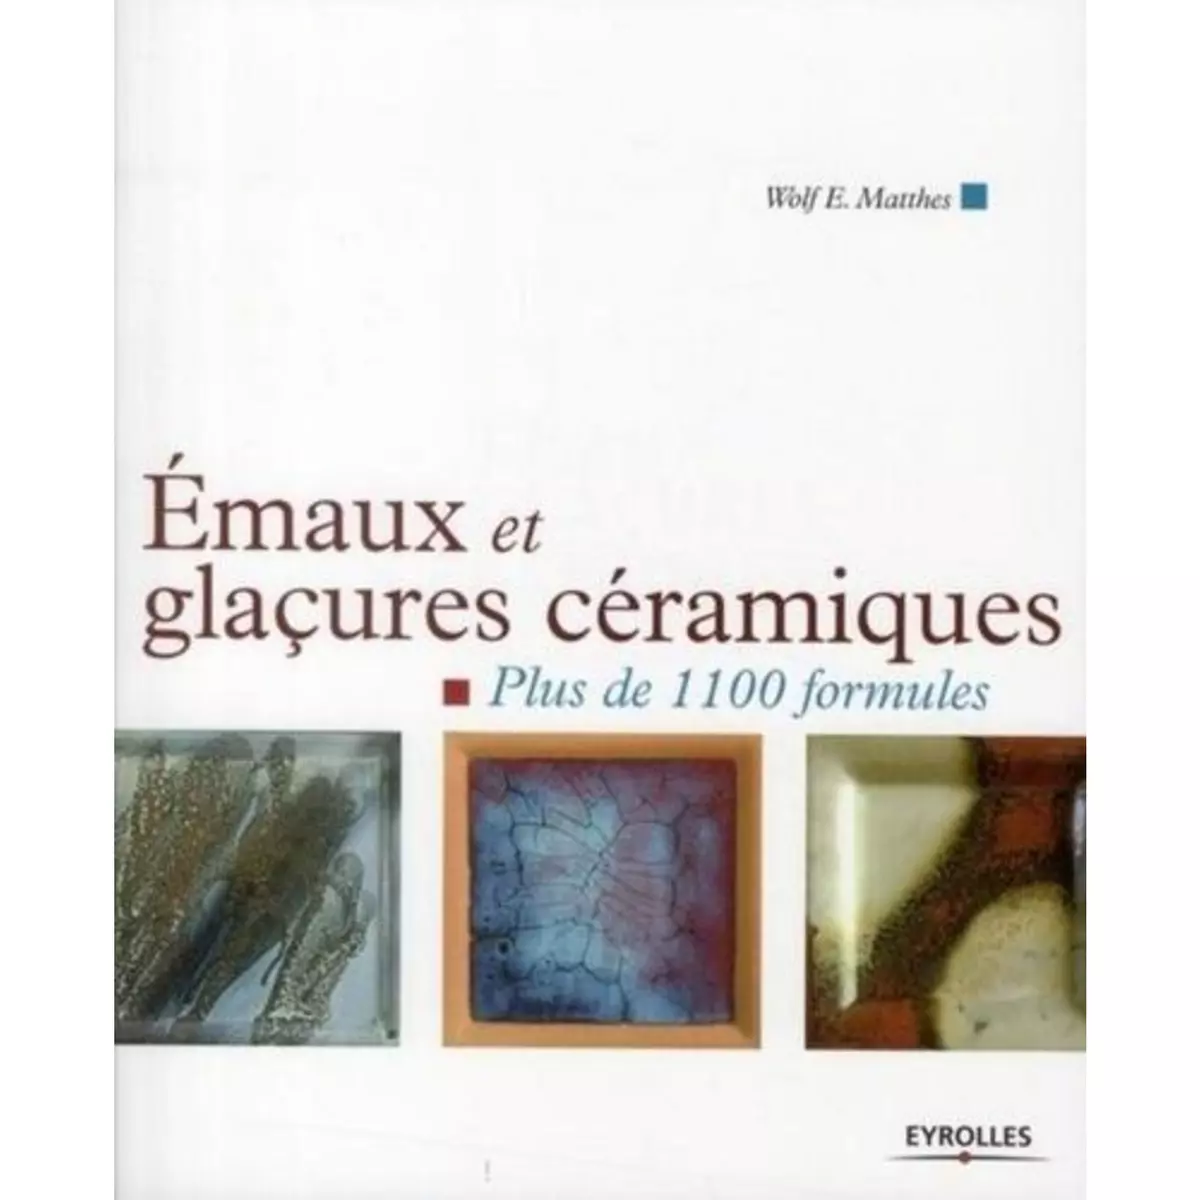  EMAUX ET GLACURES CERAMIQUES. PLUS DE 1100 FORMULES, Matthes Wolf